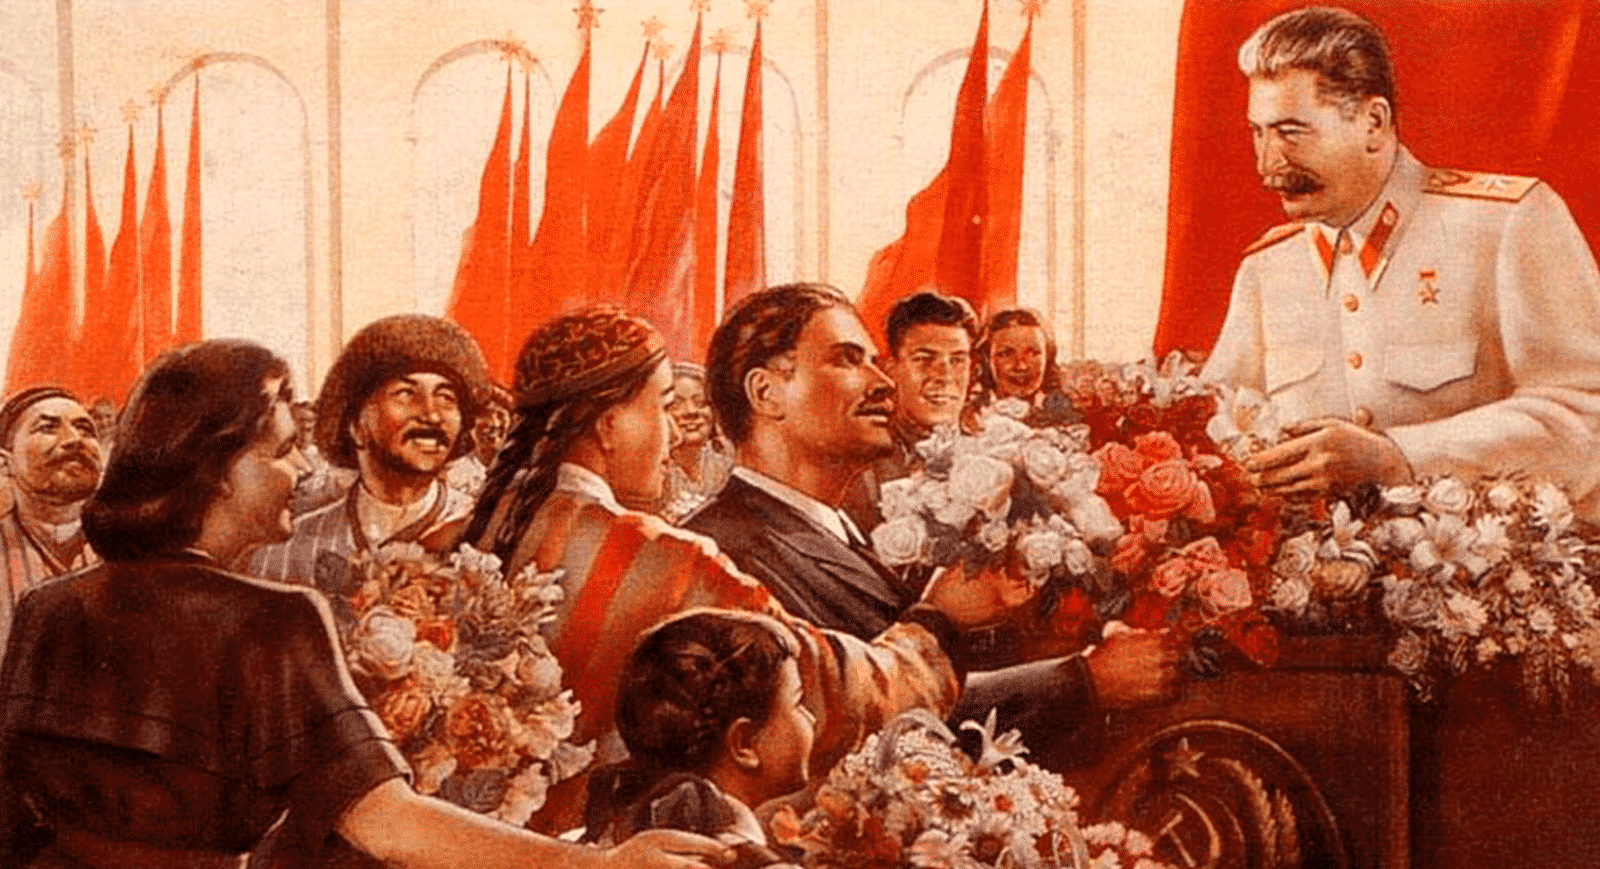 Stalinismo - Contexto histórico, consolidação e características